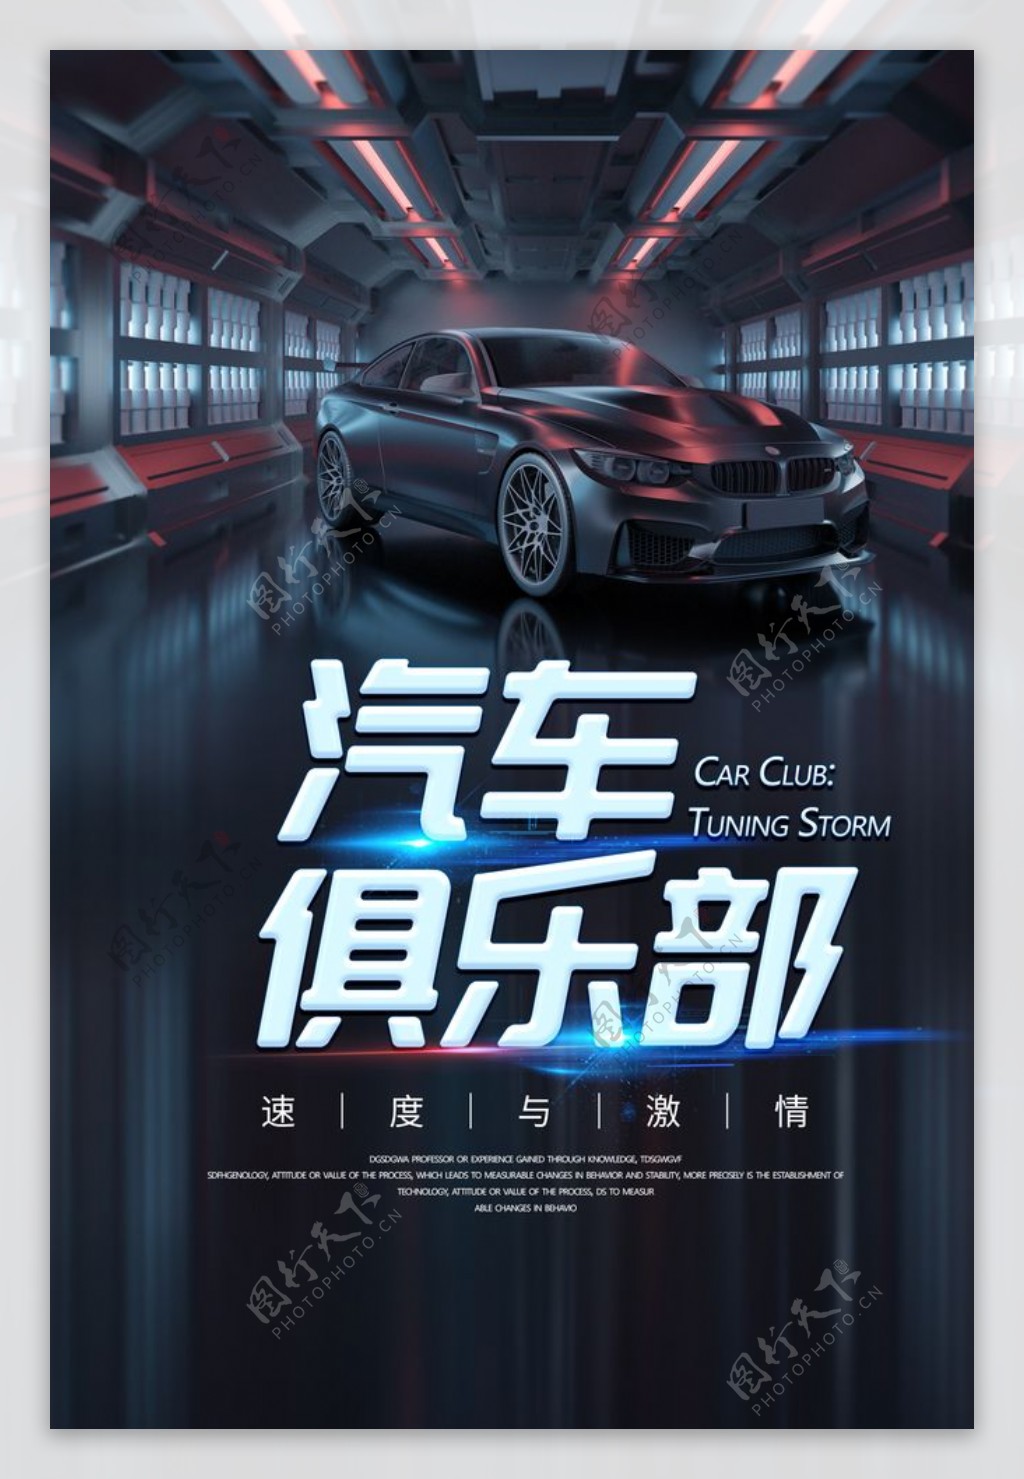 汽车俱乐部促销活动宣传海报